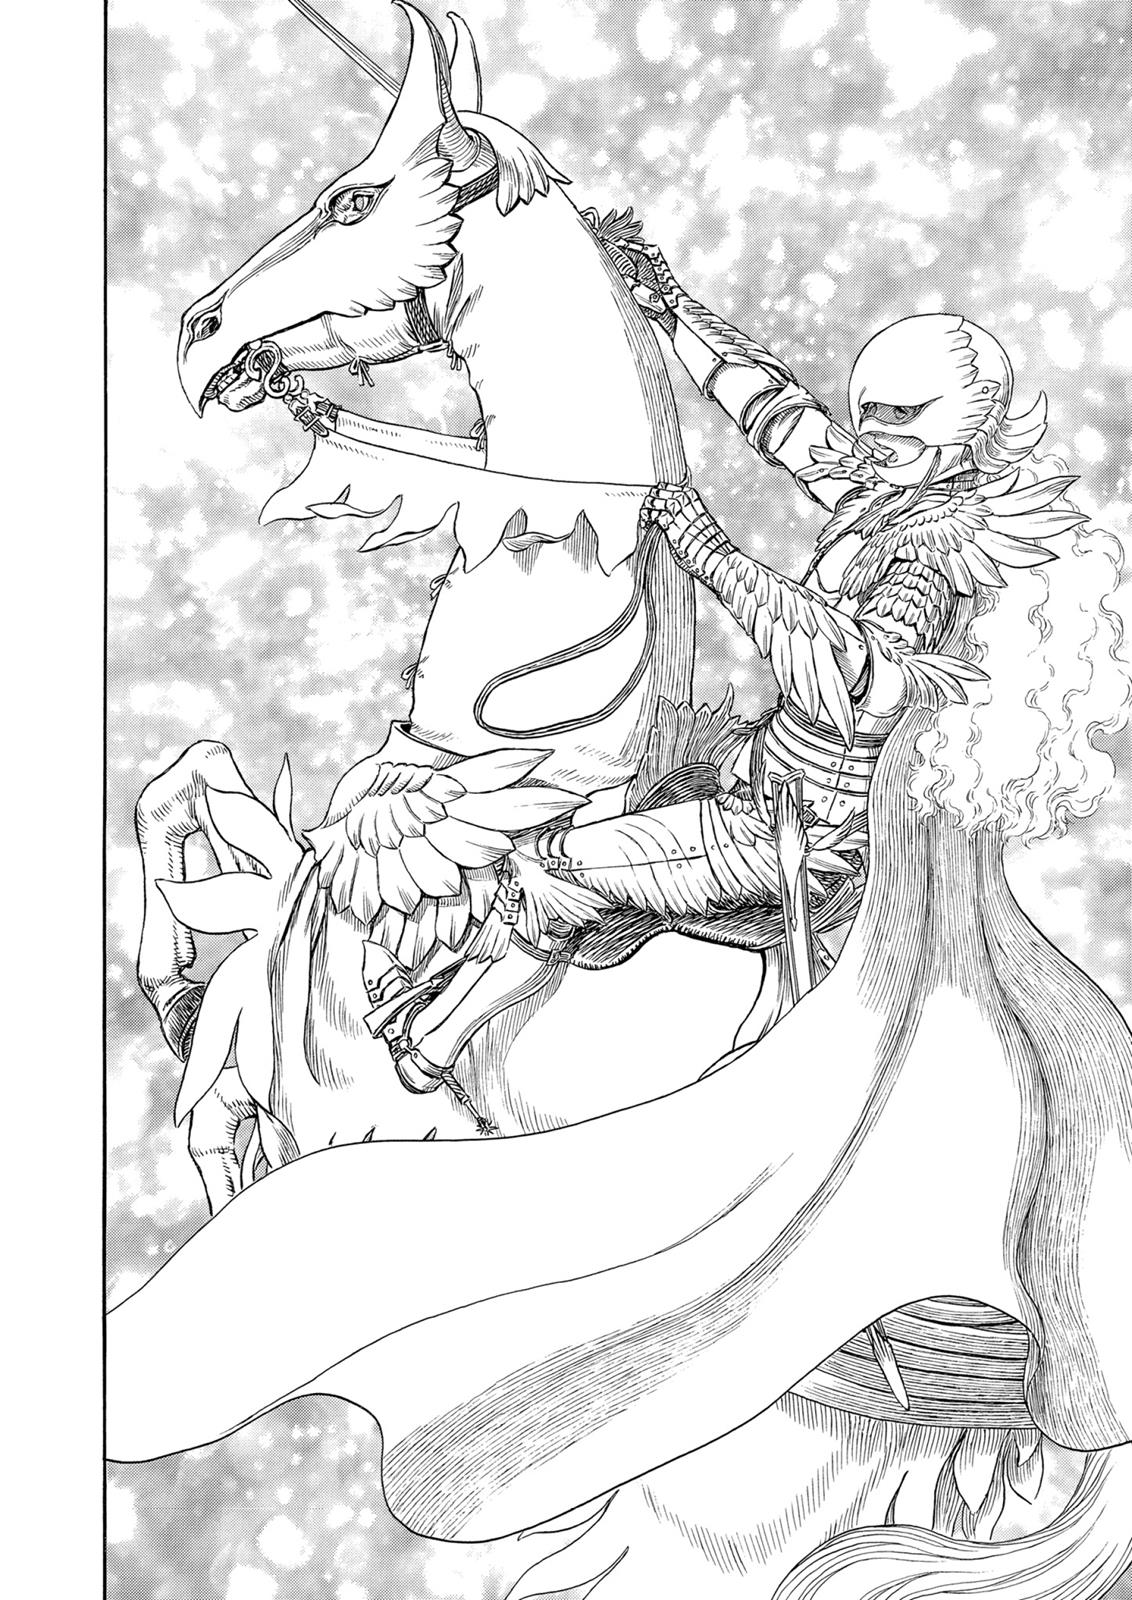 Berserk Manga Chapter 301 image 19